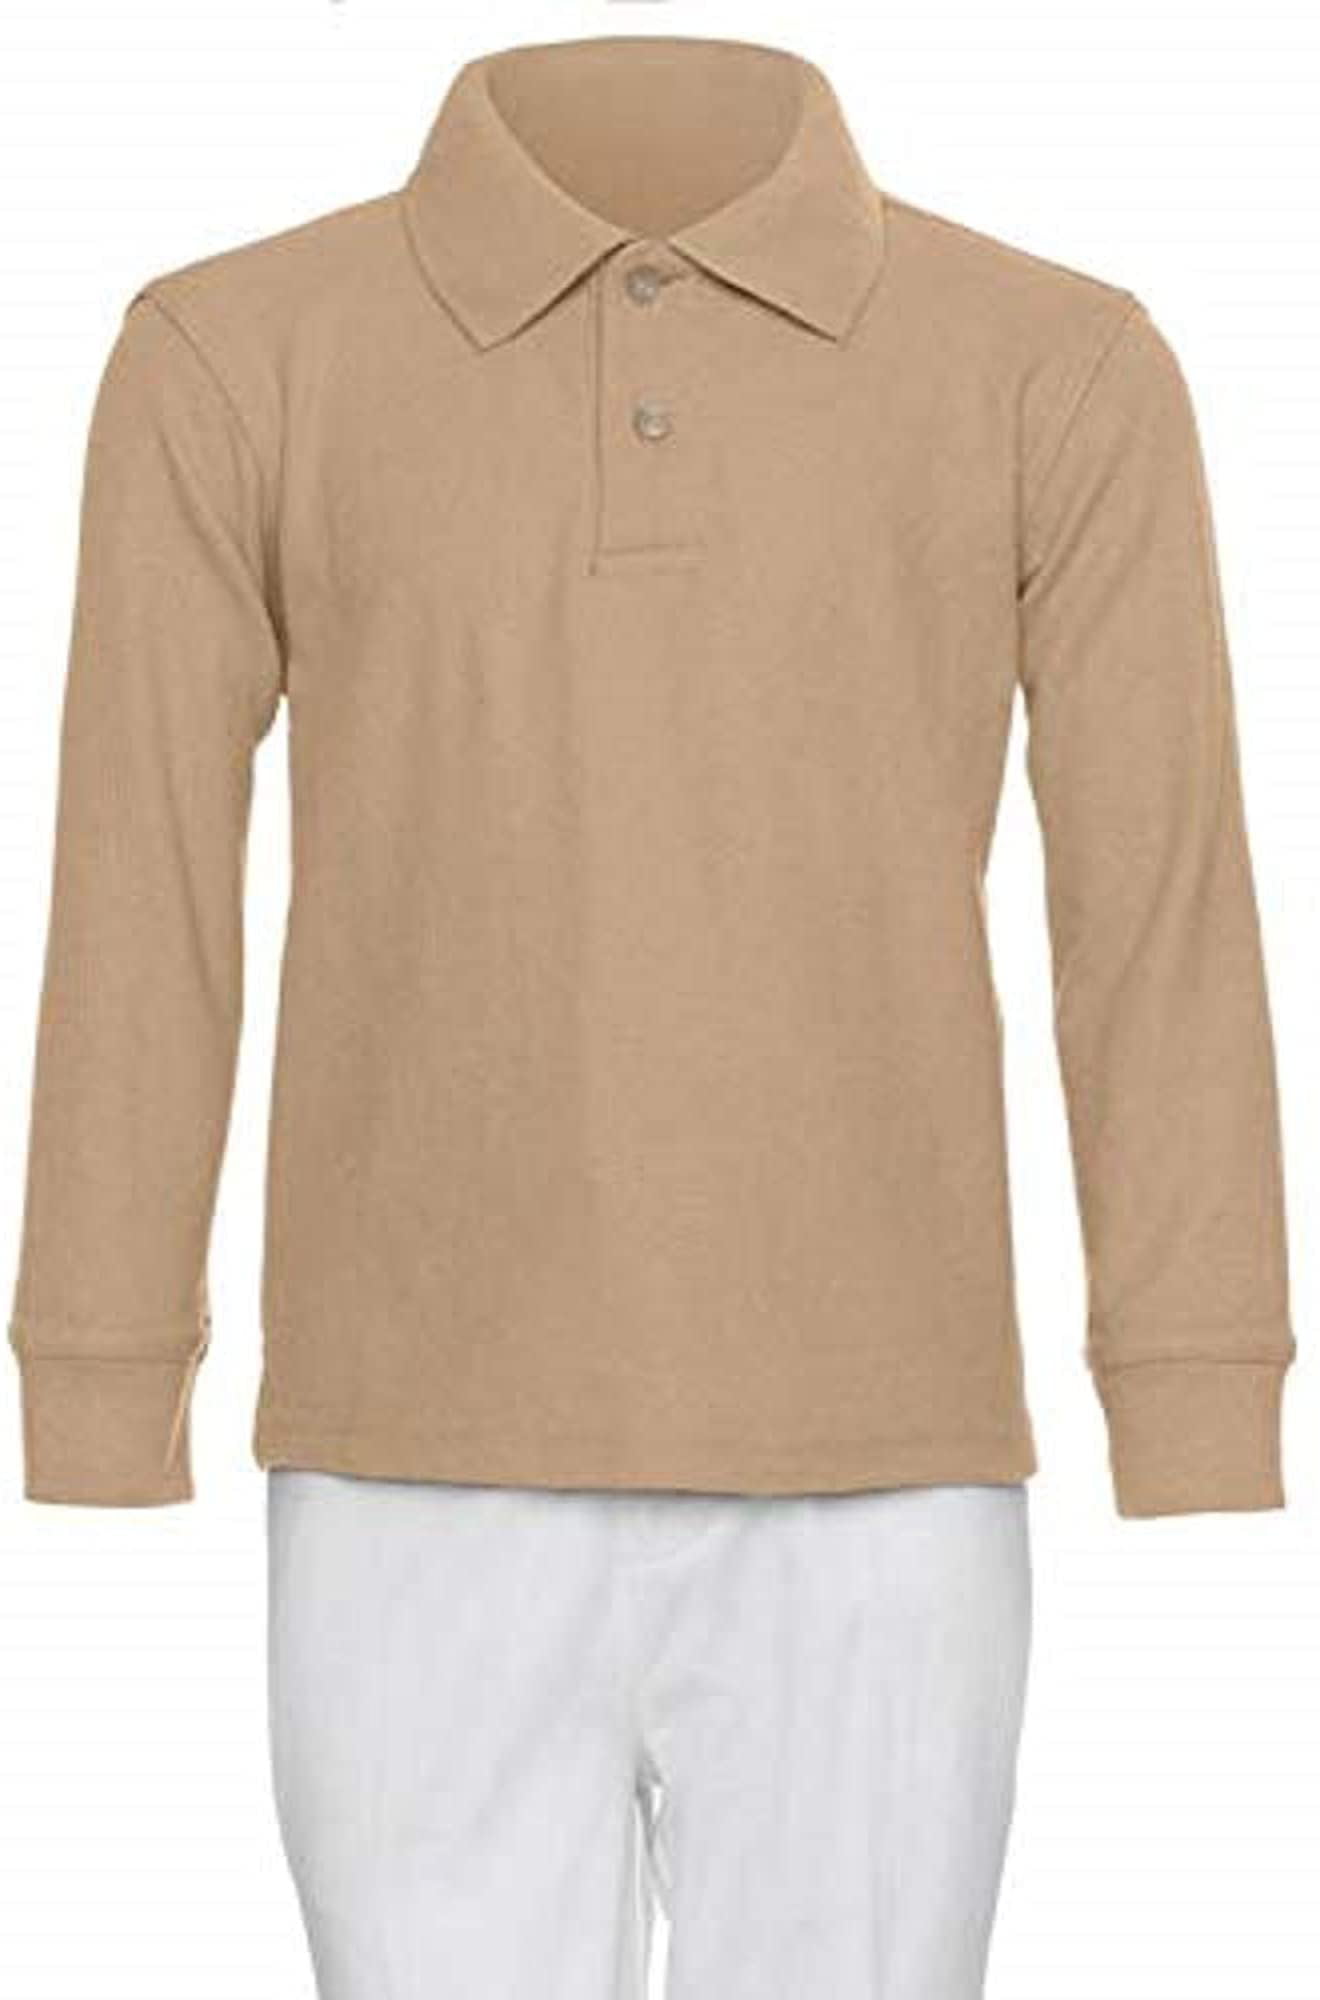 AKA Boys Wrinkle-Free Polo Shirt Pique Chambray Collar Comfortable Quality 